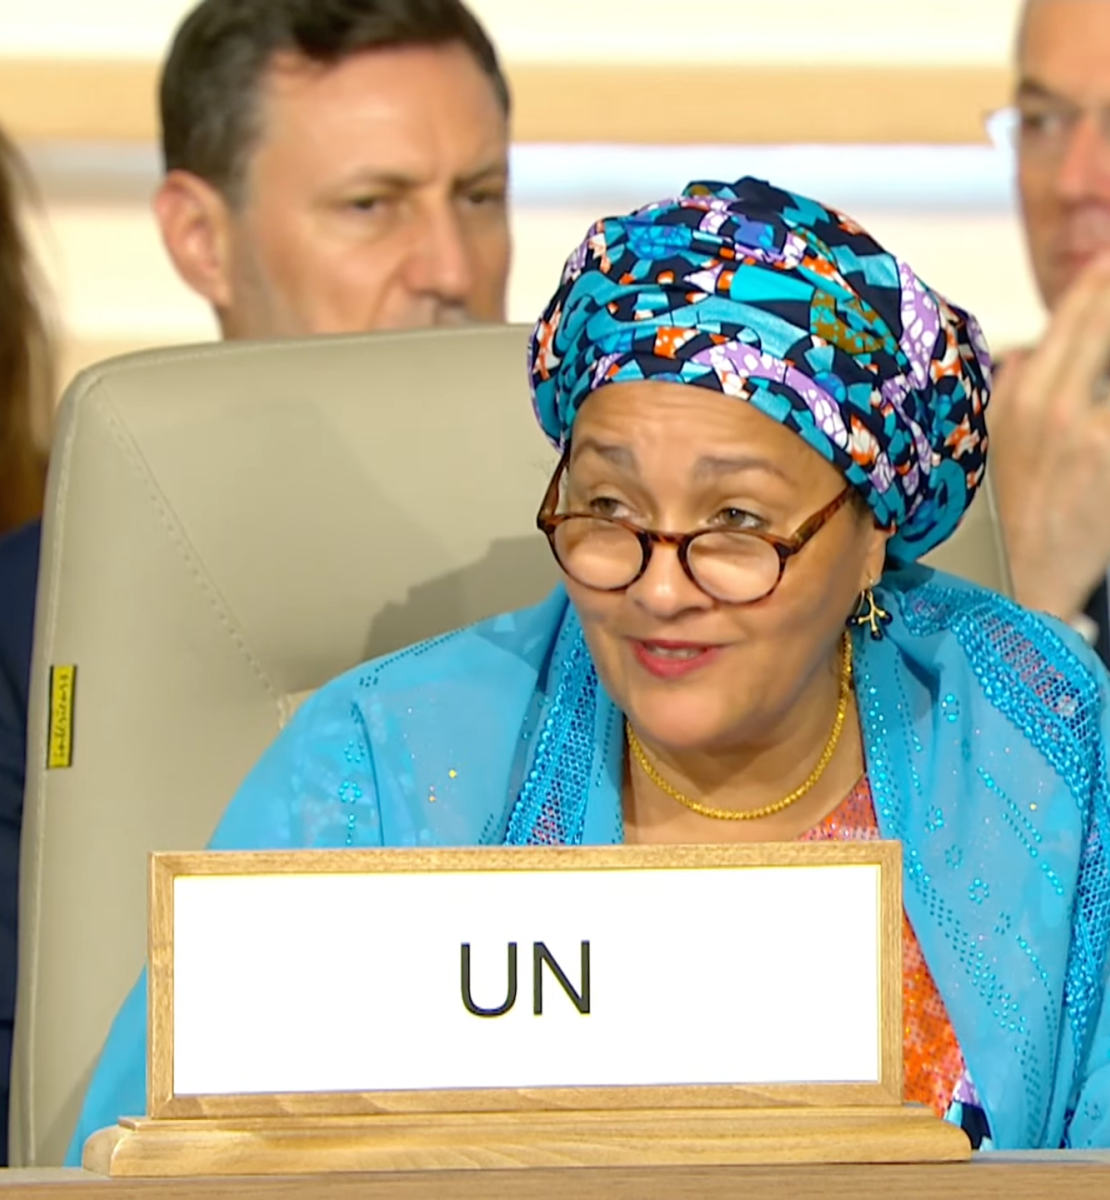 تتحدث نائبة الأمين العام للأمم المتحدة أمينة ج. محمد في حفل افتتاح مؤتمر طوكيو الدولي الثامن المعني بالتنمية في أفريقيا (تيكاد-8)، الذي عقد في العاصمة التونسية يومي 27 و28 أغسطس 2022.